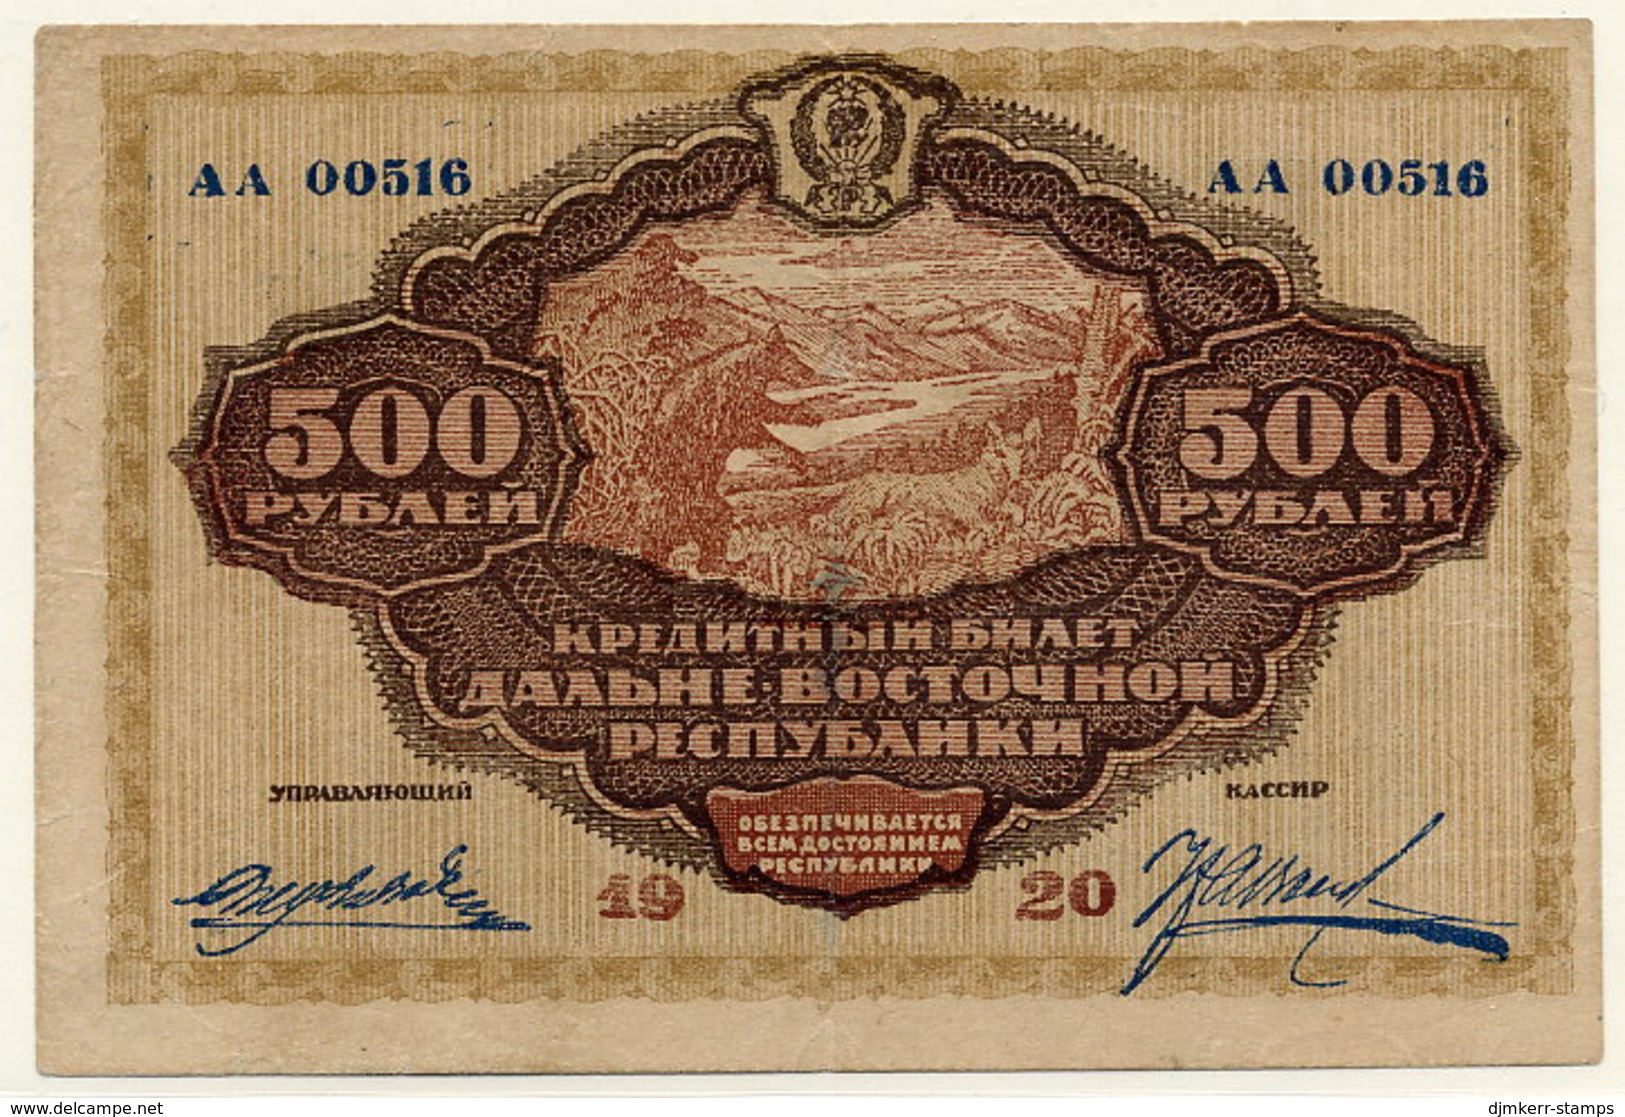 EAST SIBERIA (Far Eastern Republic) 1920 500 Rub.  VF S1207 - Rusland